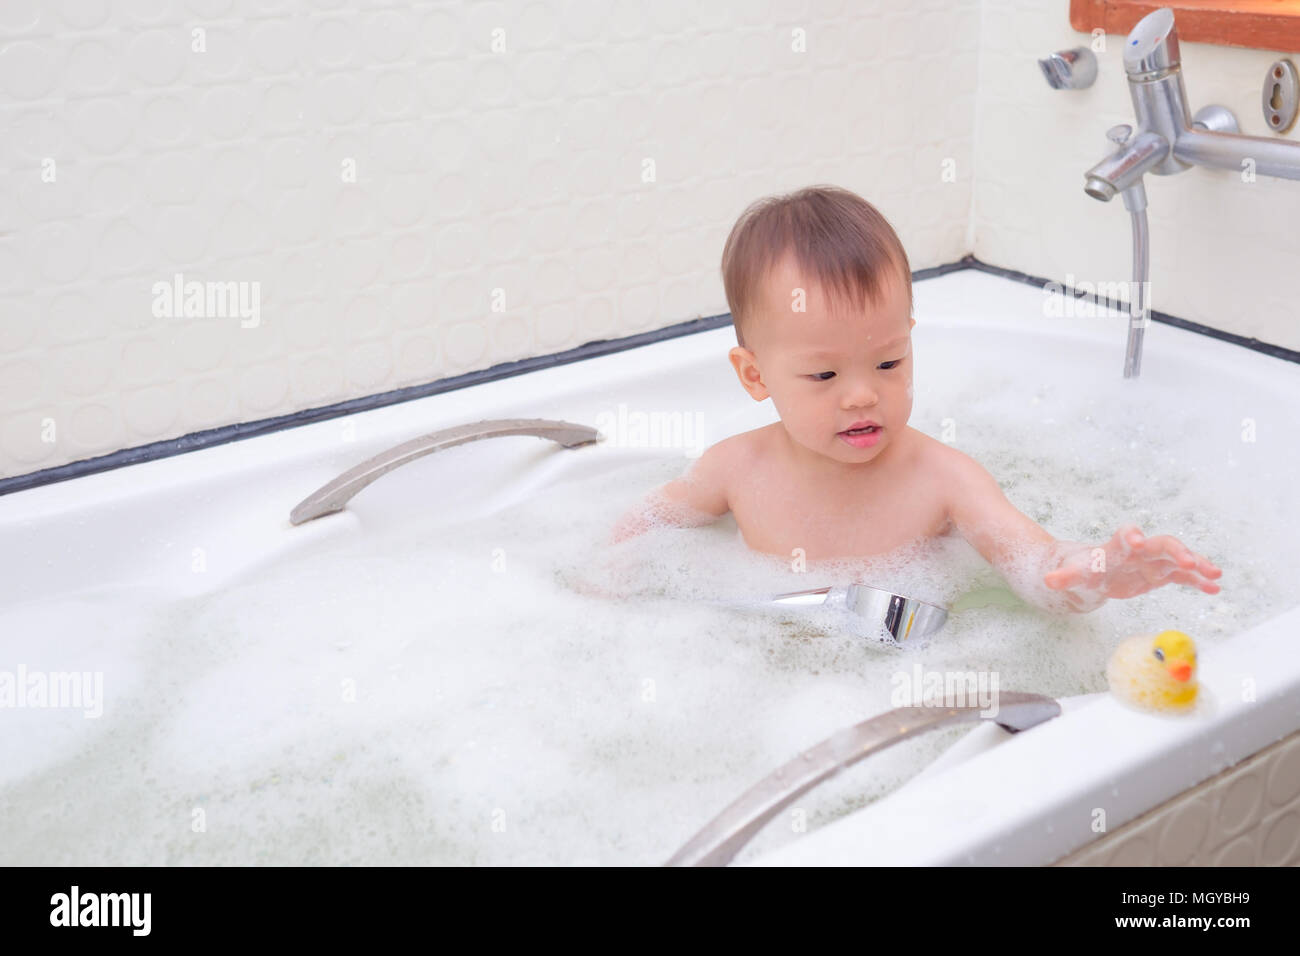 Süße kleine Asiatische 18 Monate / 1 Jahr altes Kleinkind Baby Junge Kind  Spaß sitzen in der Badewanne spielen Rubber Duck toy und eine Dusche nehmen,  indem er sich in Stockfotografie - Alamy